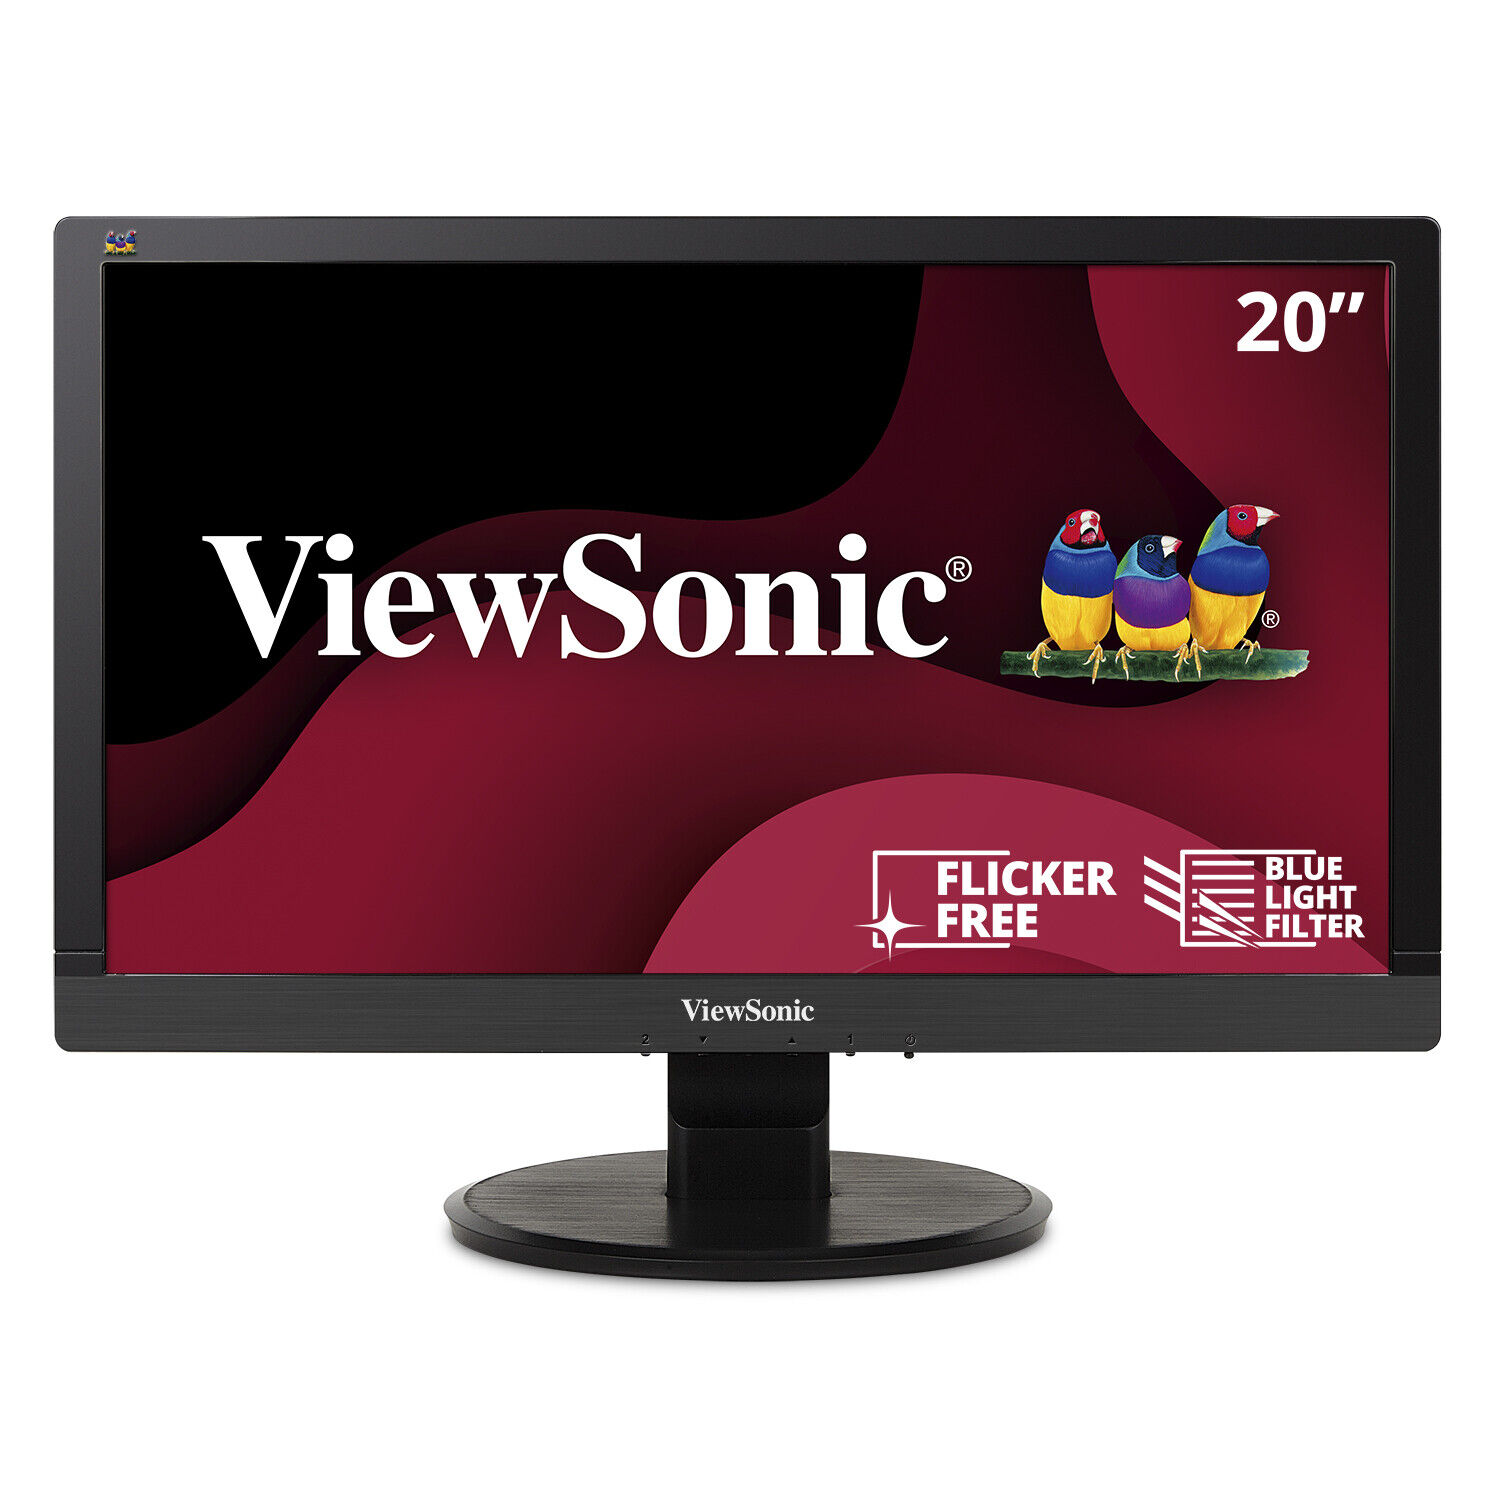 ViewSonic VA2055SA 20in 1080p LED Monitor with VGA (CR)